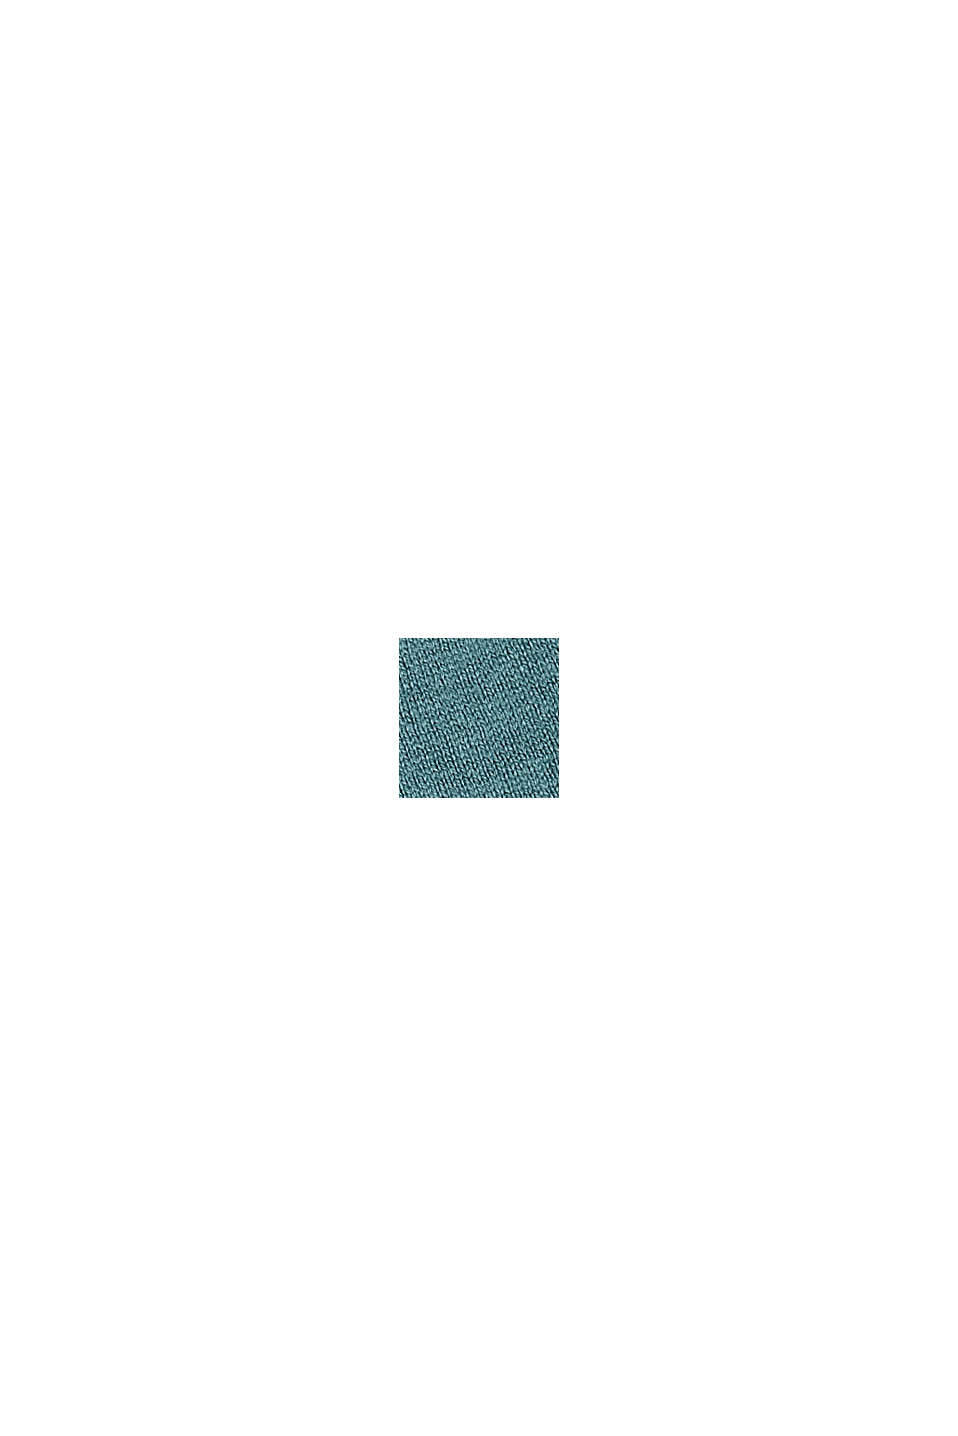 Cardigan en fine maille de coton biologique mélangé, TEAL BLUE, swatch